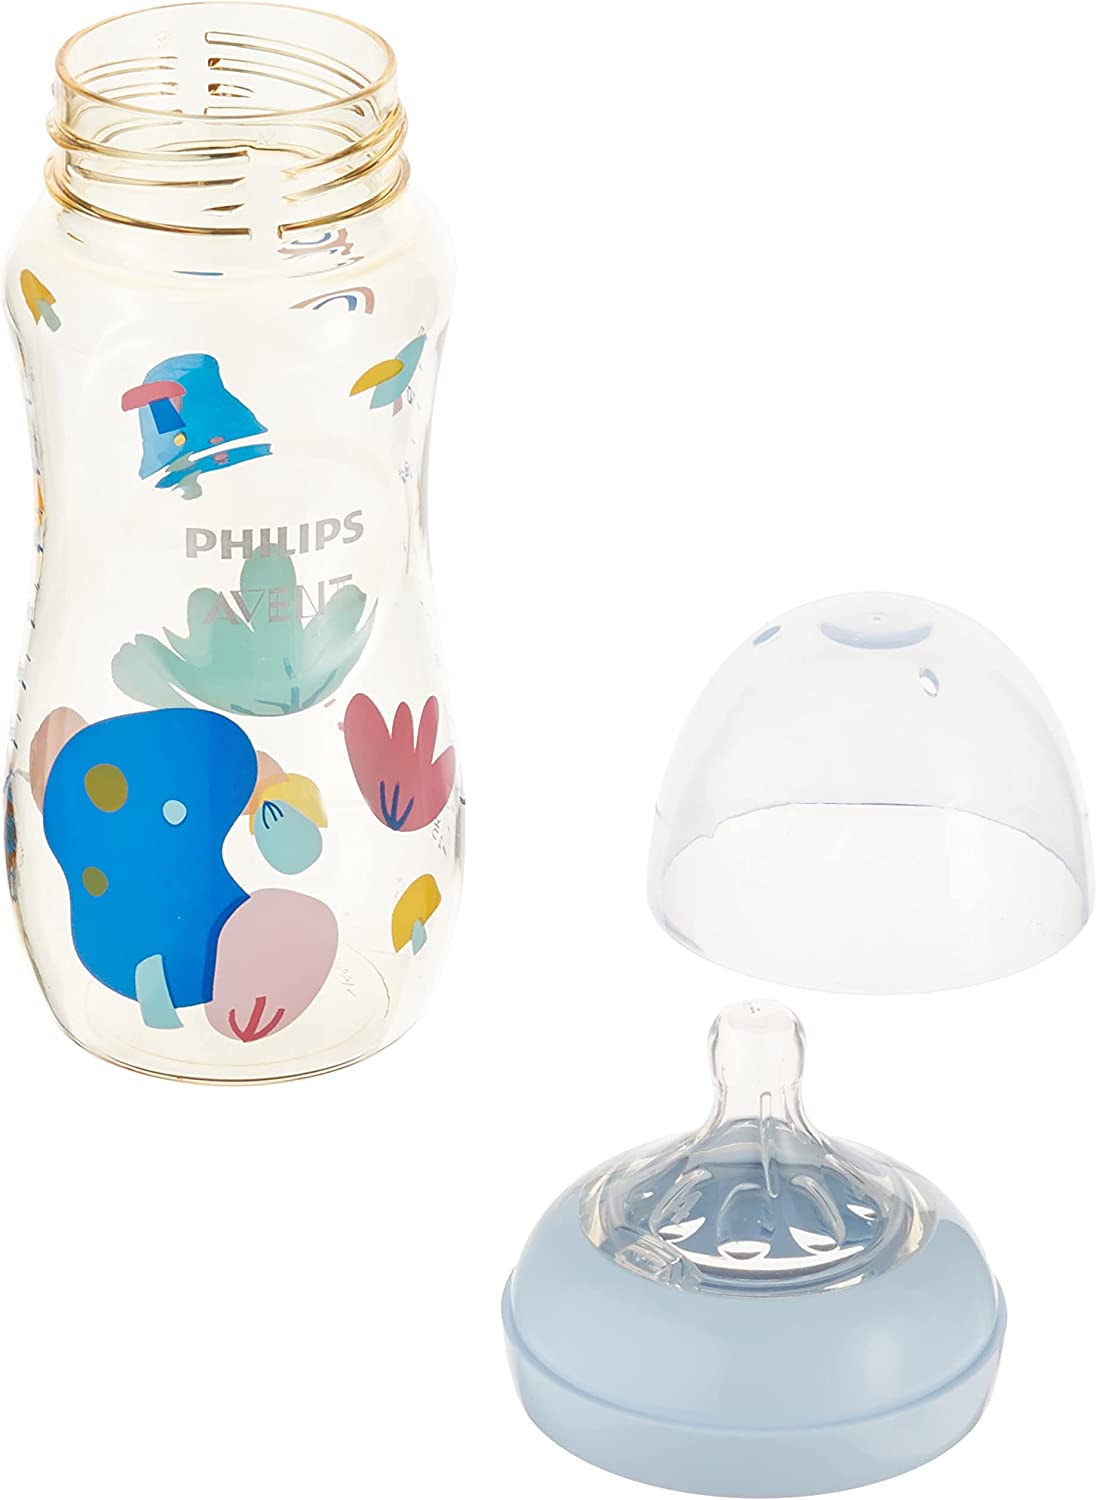 Philips Avent Bình sữa PPSU thiết kế tự nhiên 330ml cho bé từ 6 tháng tuổi SCF583/10